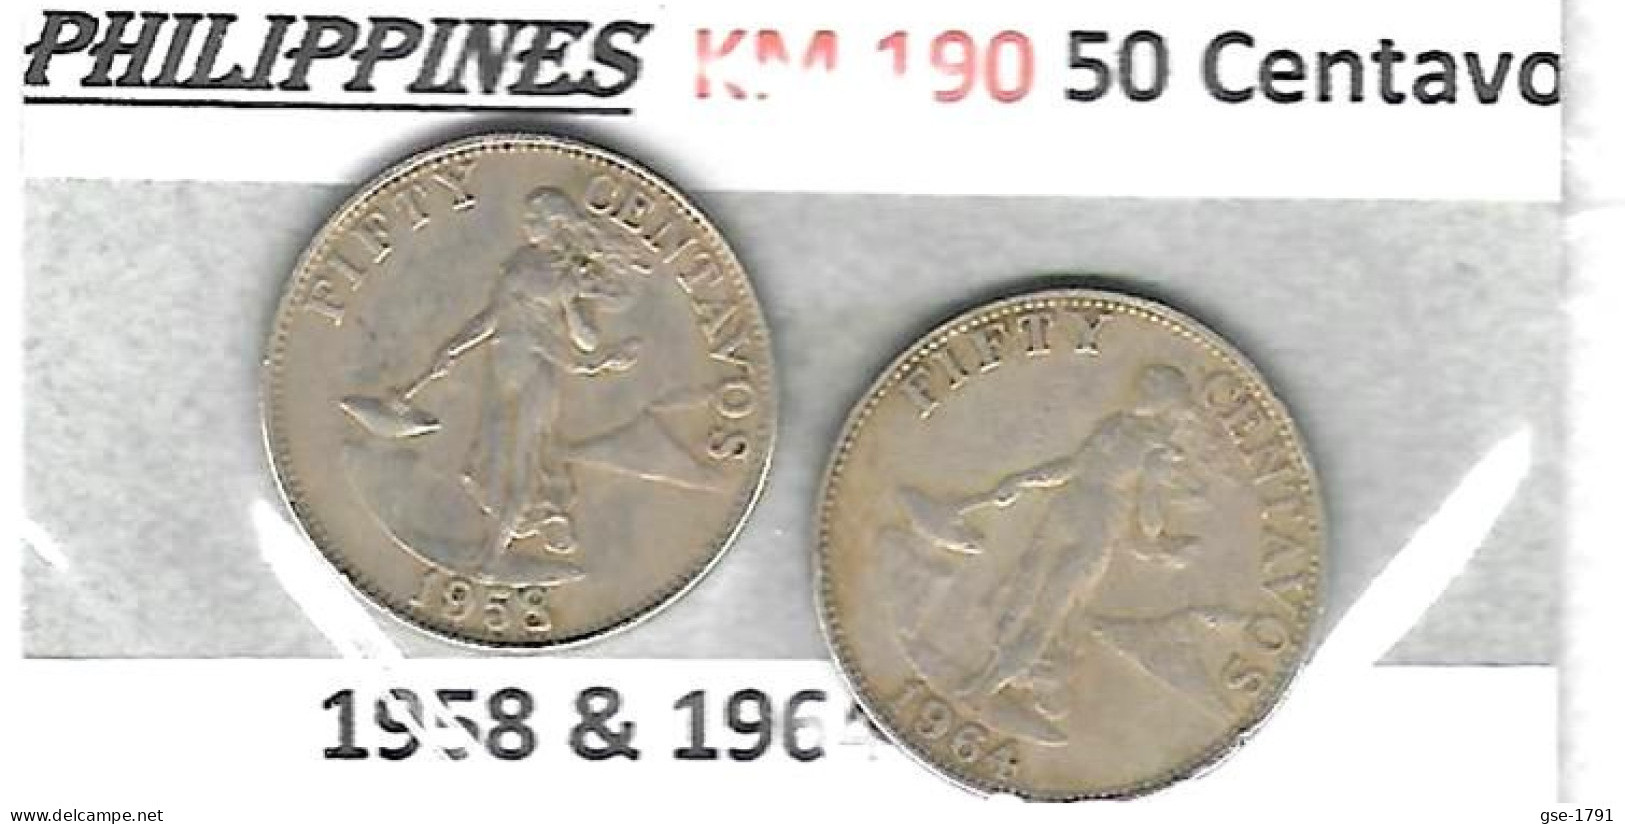 PHILIPPINES Républic Décimal, Petites Monnaies, Femme, 50 Centavos  KM  190 - Filipinas